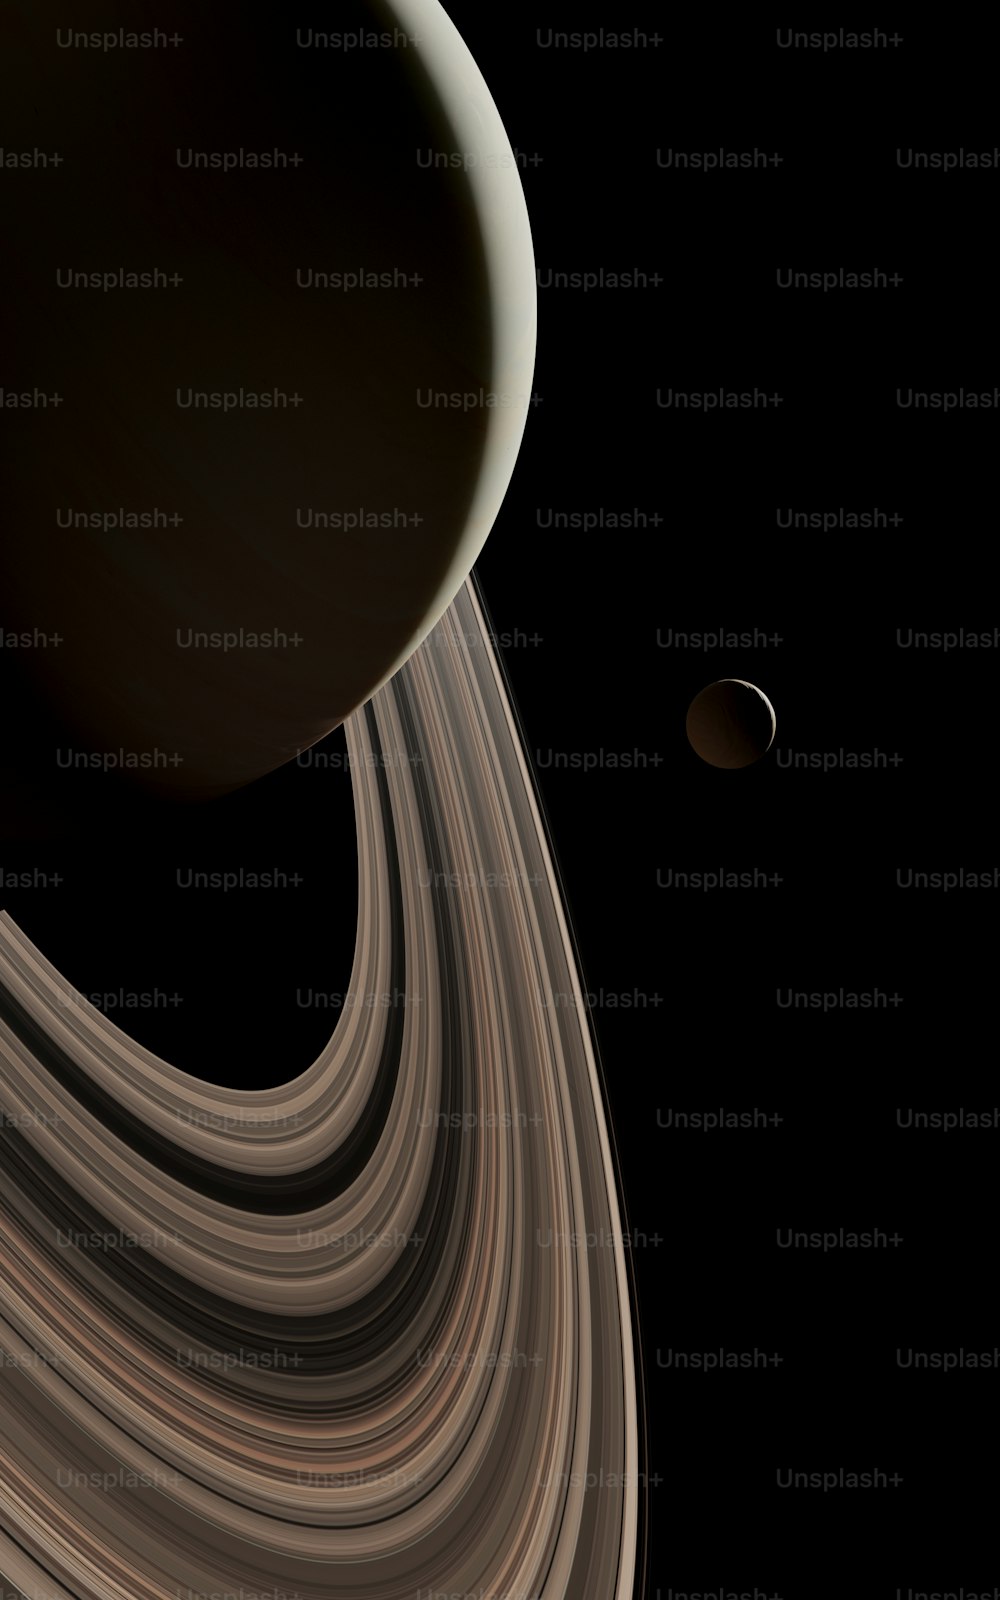 Ein Bild des Saturn, aufgenommen von der NASA-Raumsonde Cassini